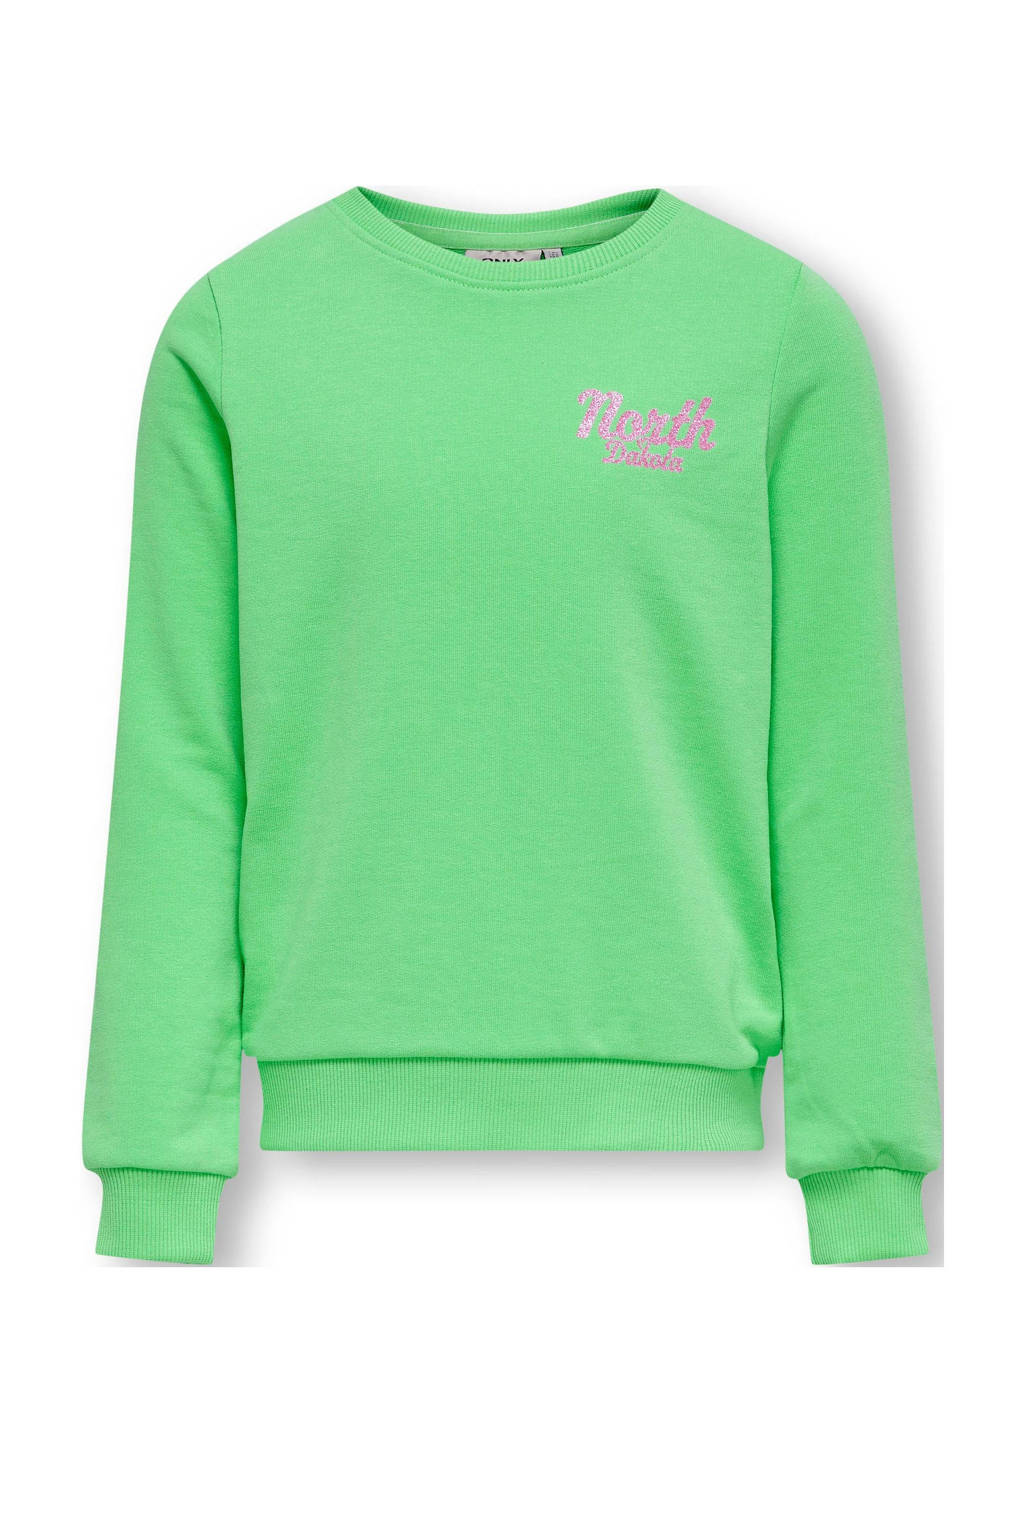 sweater KOGSOPHIE met backprint groen/roze